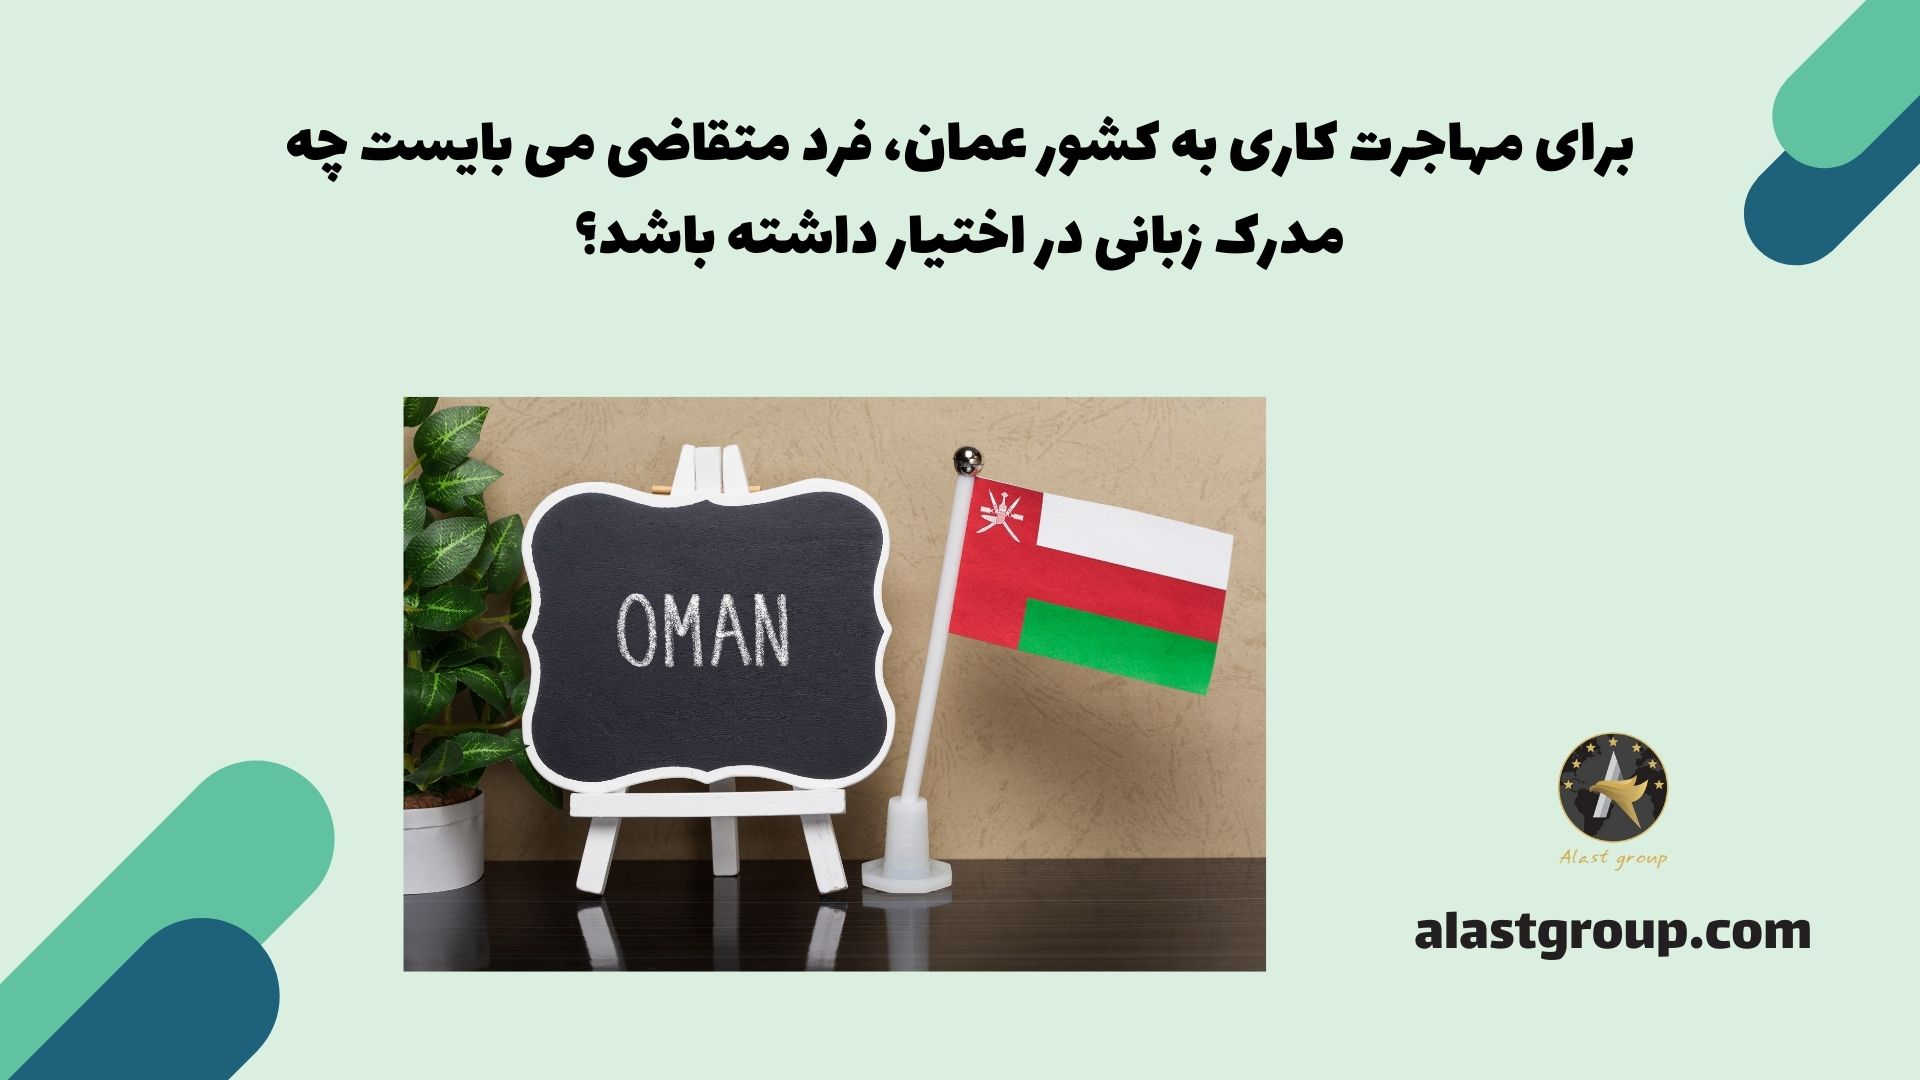 برای مهاجرت کاری به کشور عمان، فرد متقاضی می بایست چه مدرک زبانی در اختیار داشته باشد؟